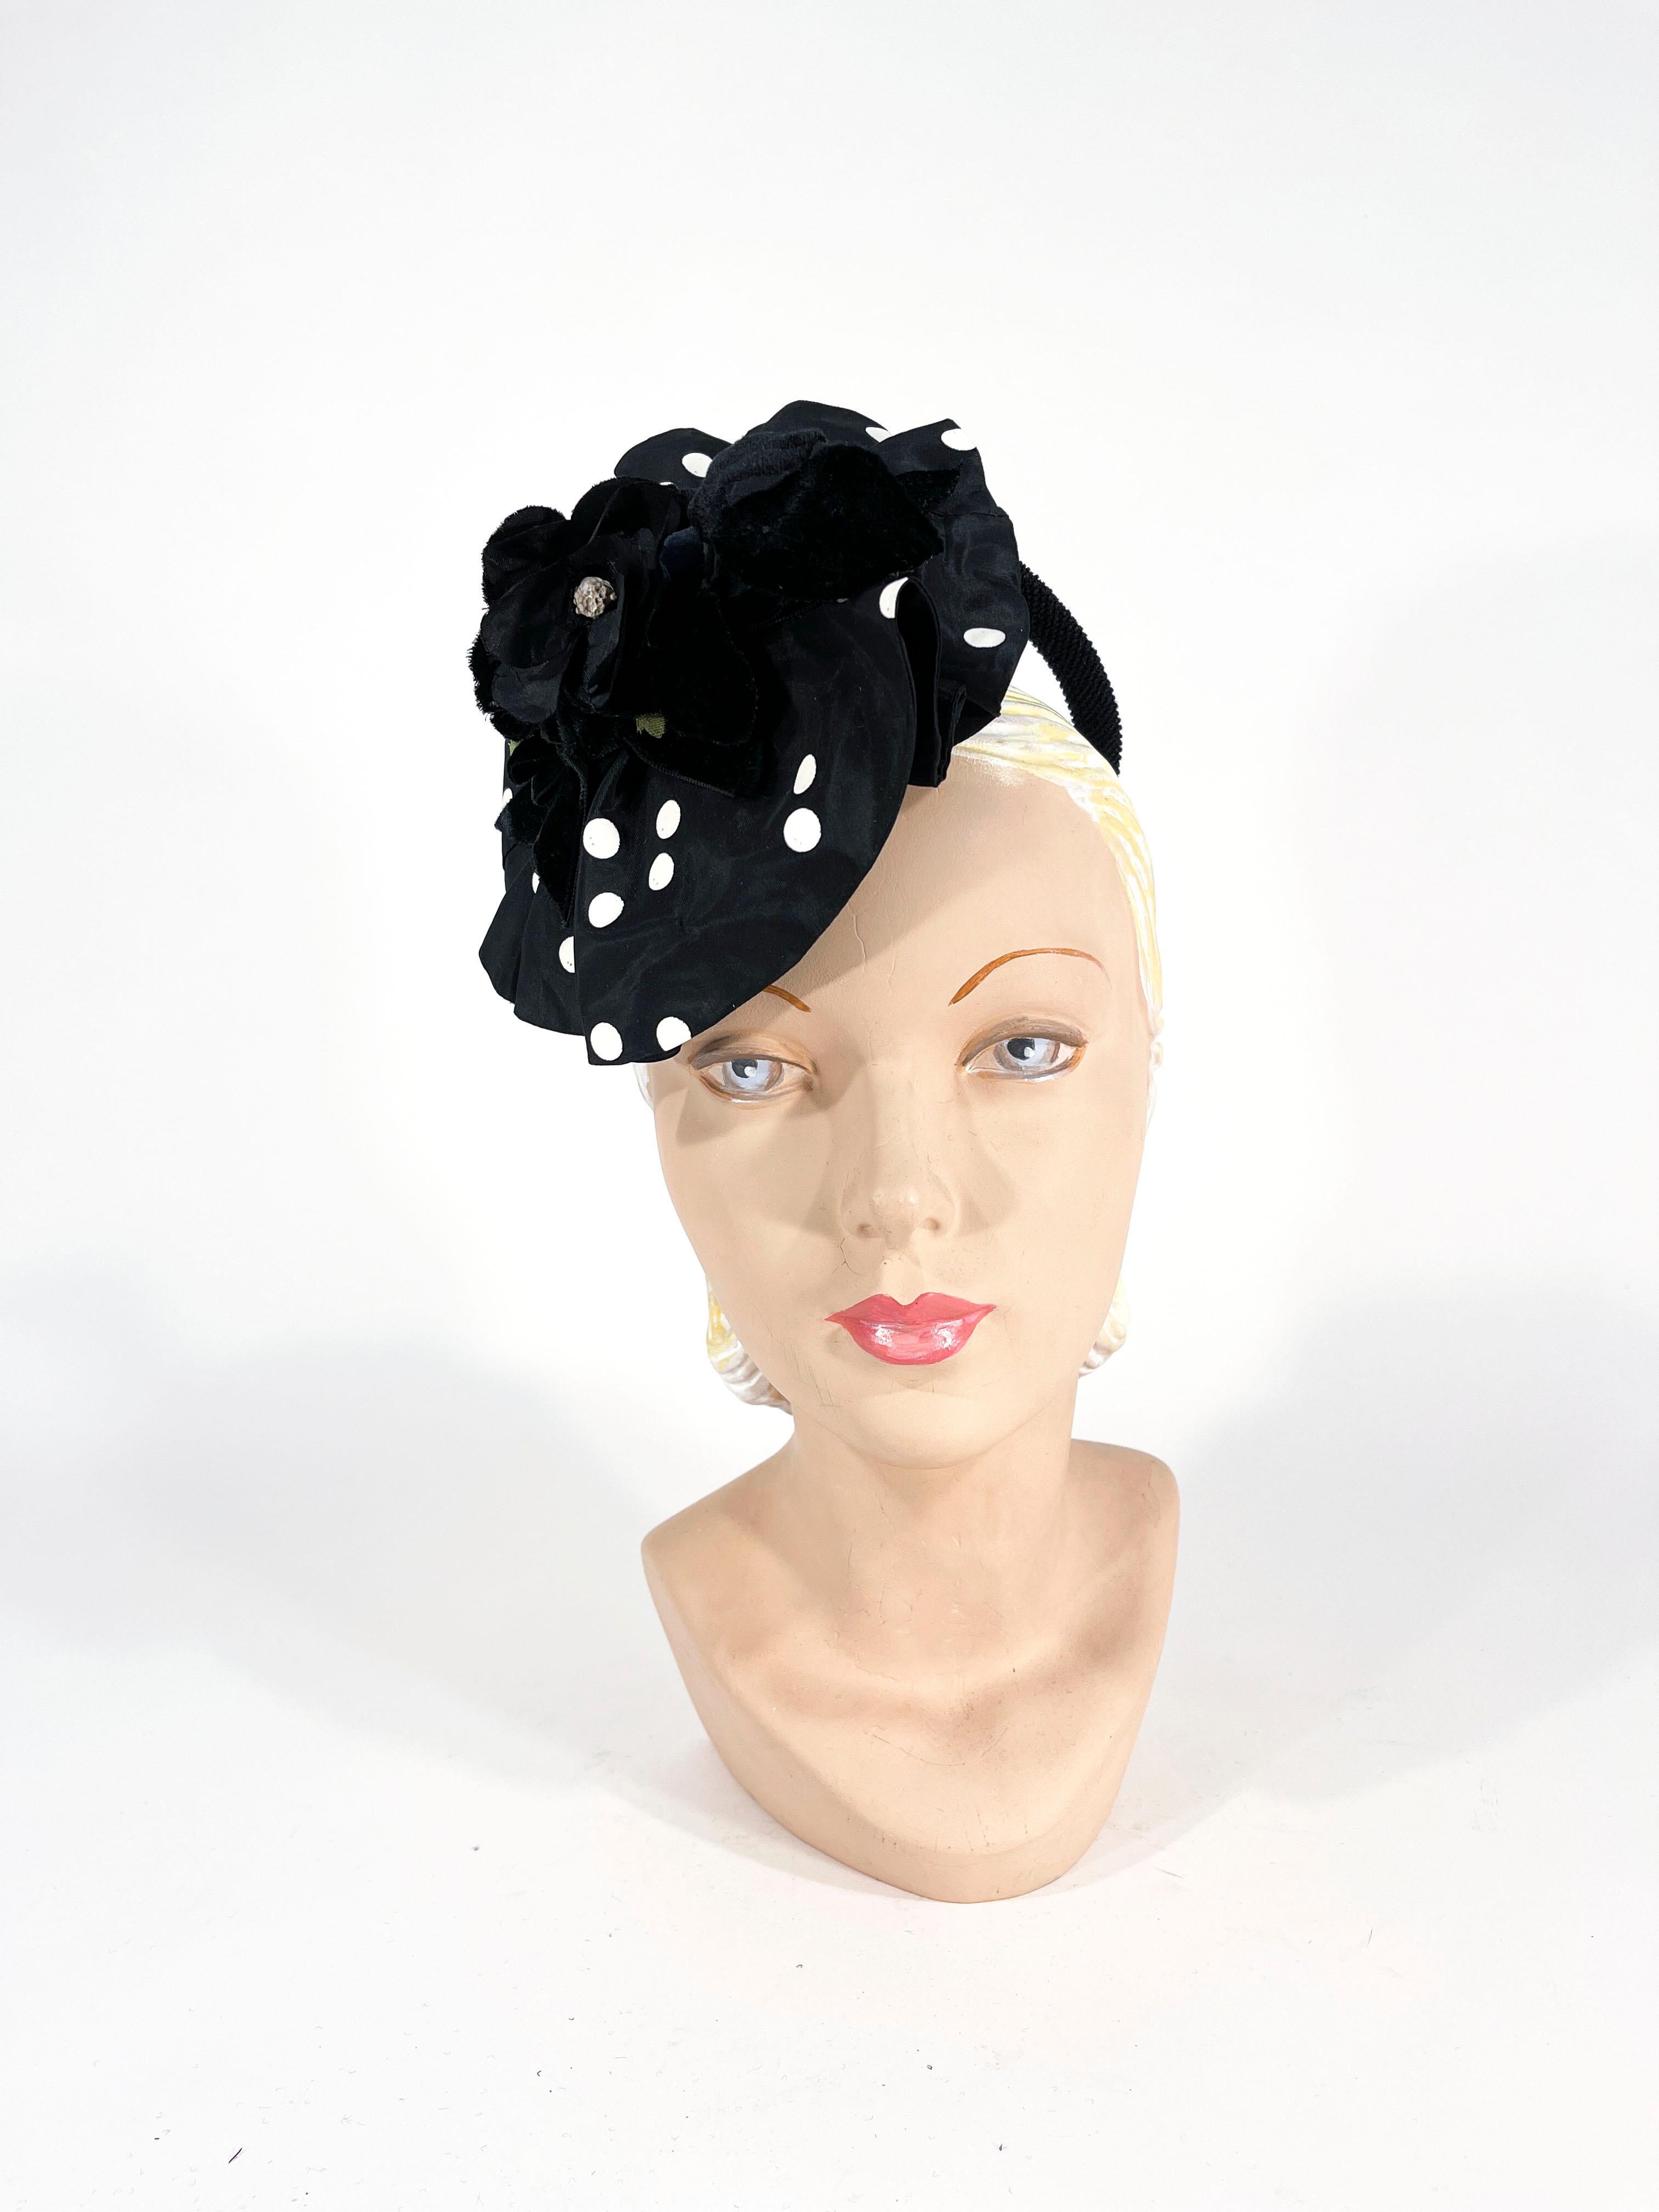 chapeau de cocktail des années 1930 en taffetas noir et blanc à pois avec un anneau de maintien structuré qui perche le chapeau sur le côté de la tête. Le tissu est froncé pour créer un grand volant et est surmonté d'une fleur en soie et velours et